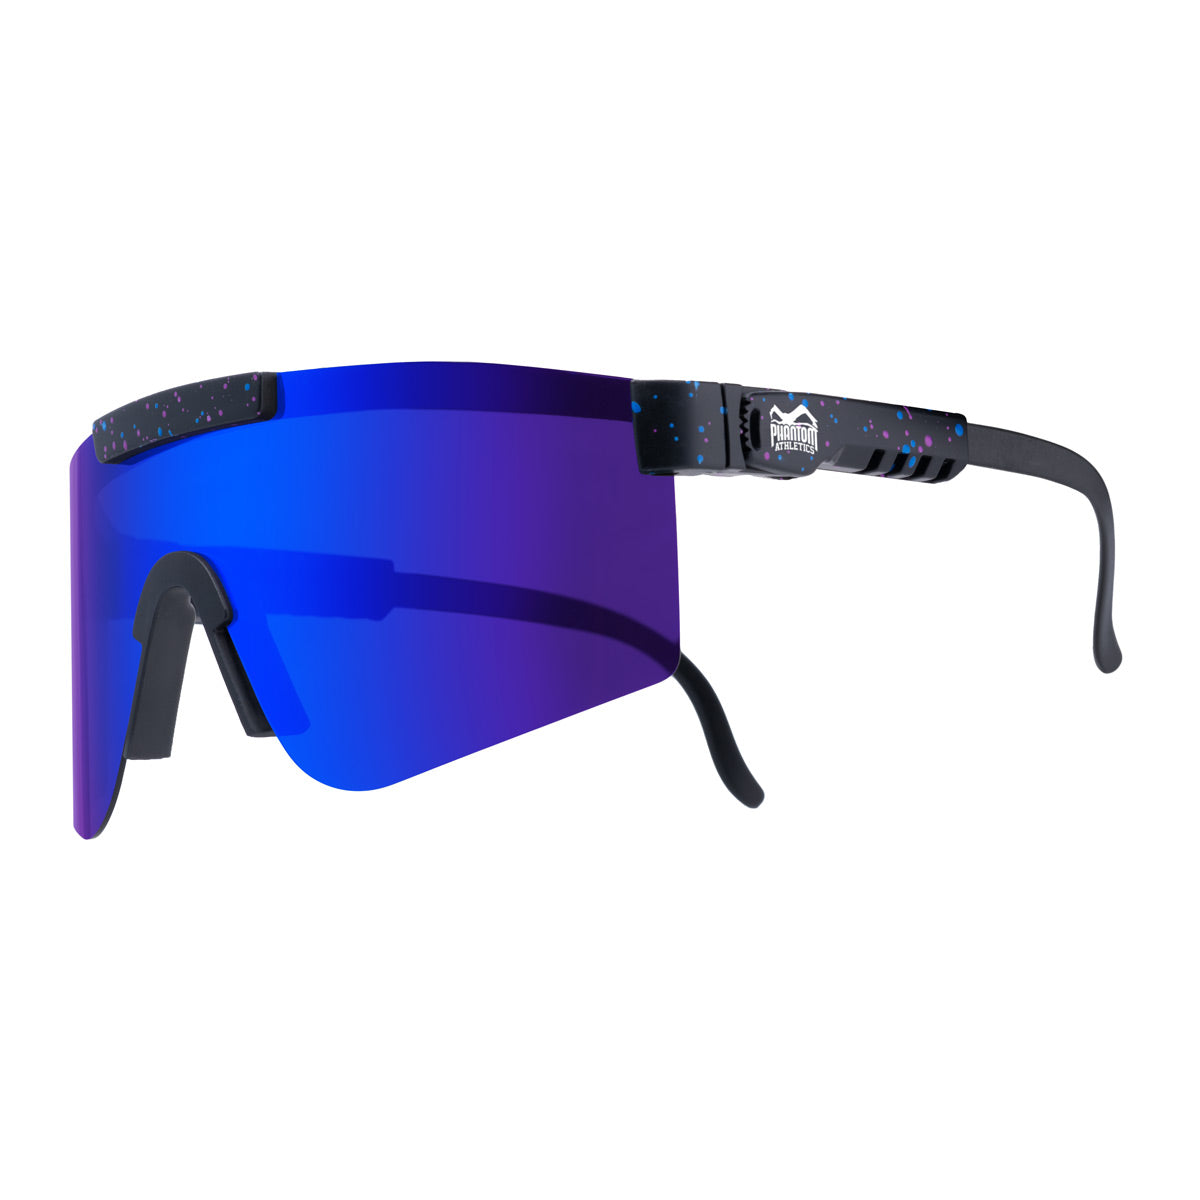 - & arts sunglasses martial ATHLETICS fitness PHANTOM | PHANTOM black/blue